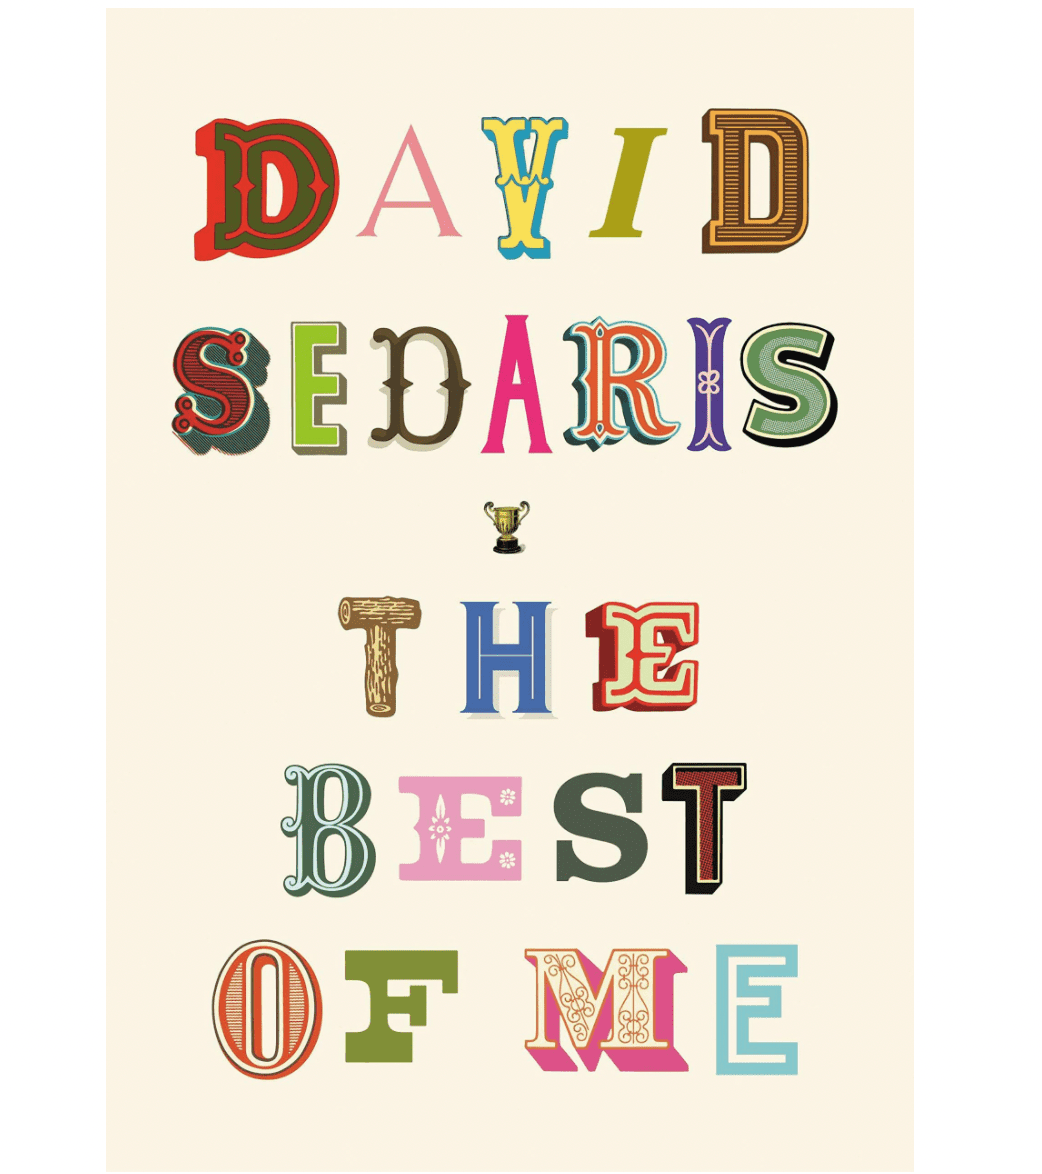 The Best of Me, by David Sedaris